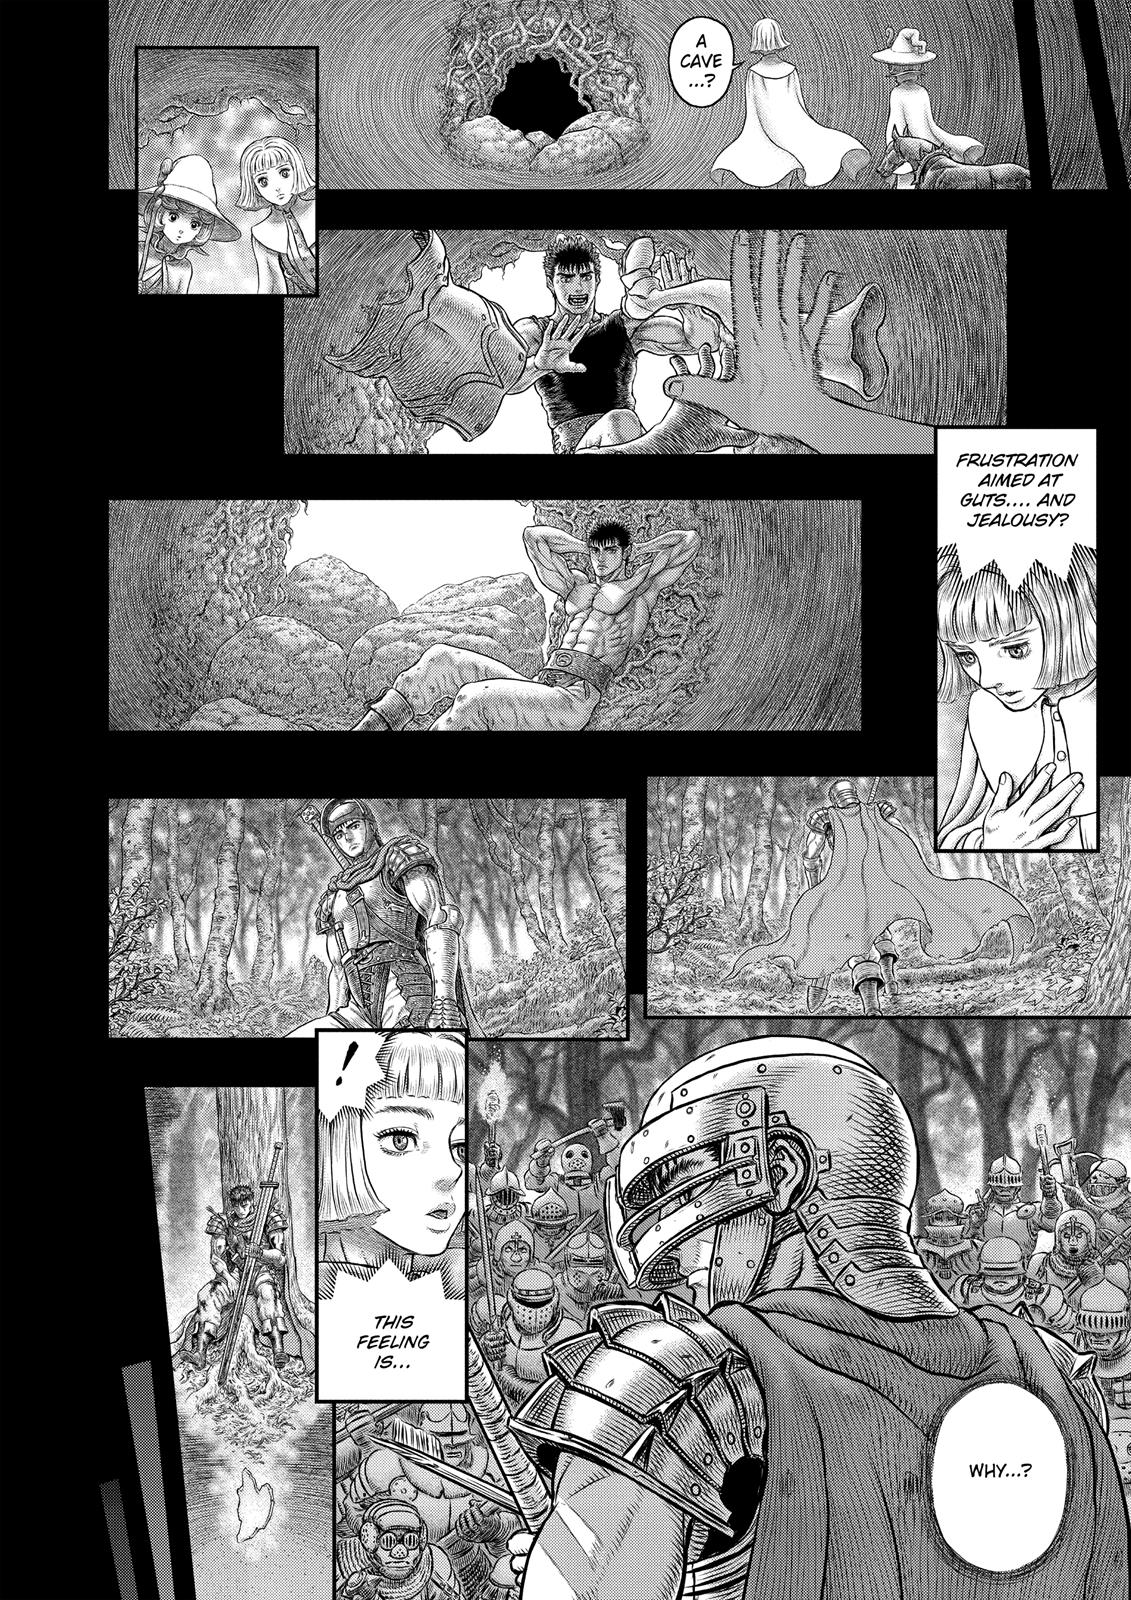 Berserk Manga Chapter 350 image 09